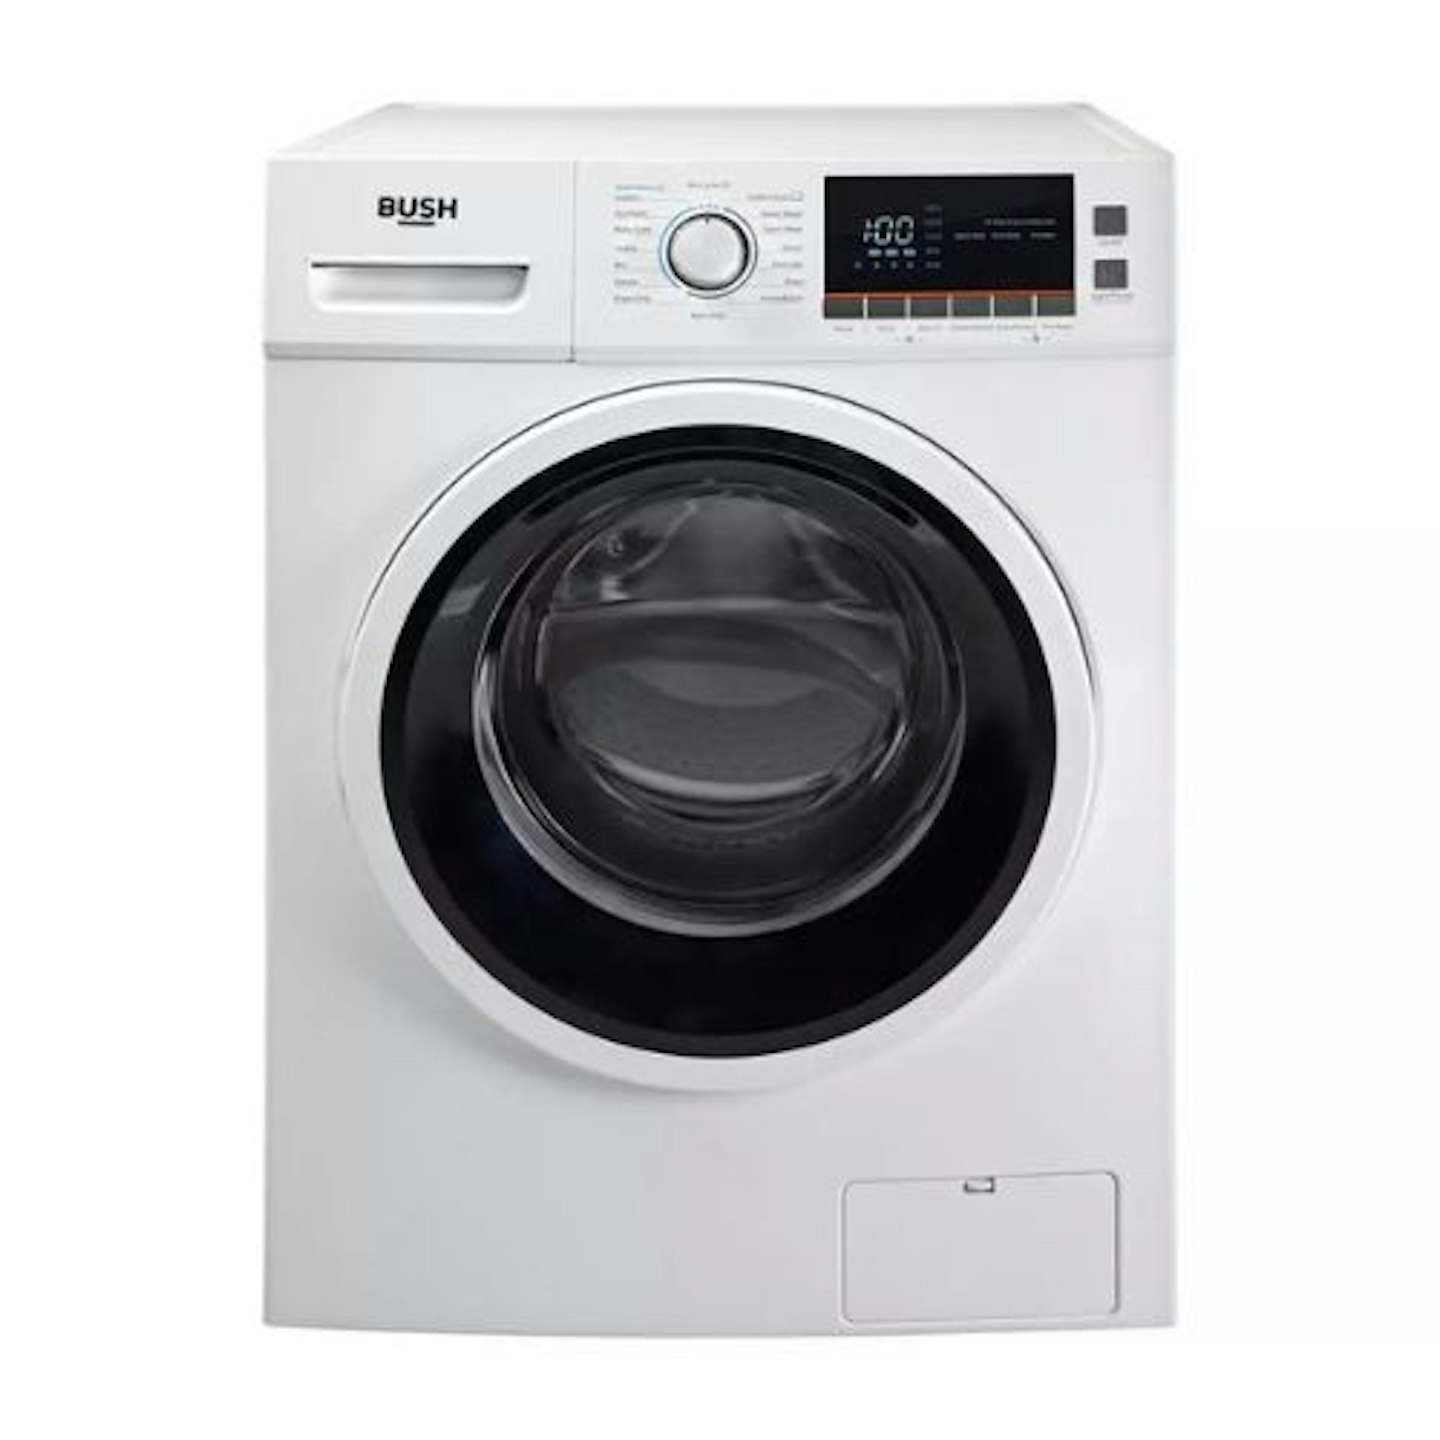 Bush WMSAEX1214 12KG 1400 Spin Washing Machine